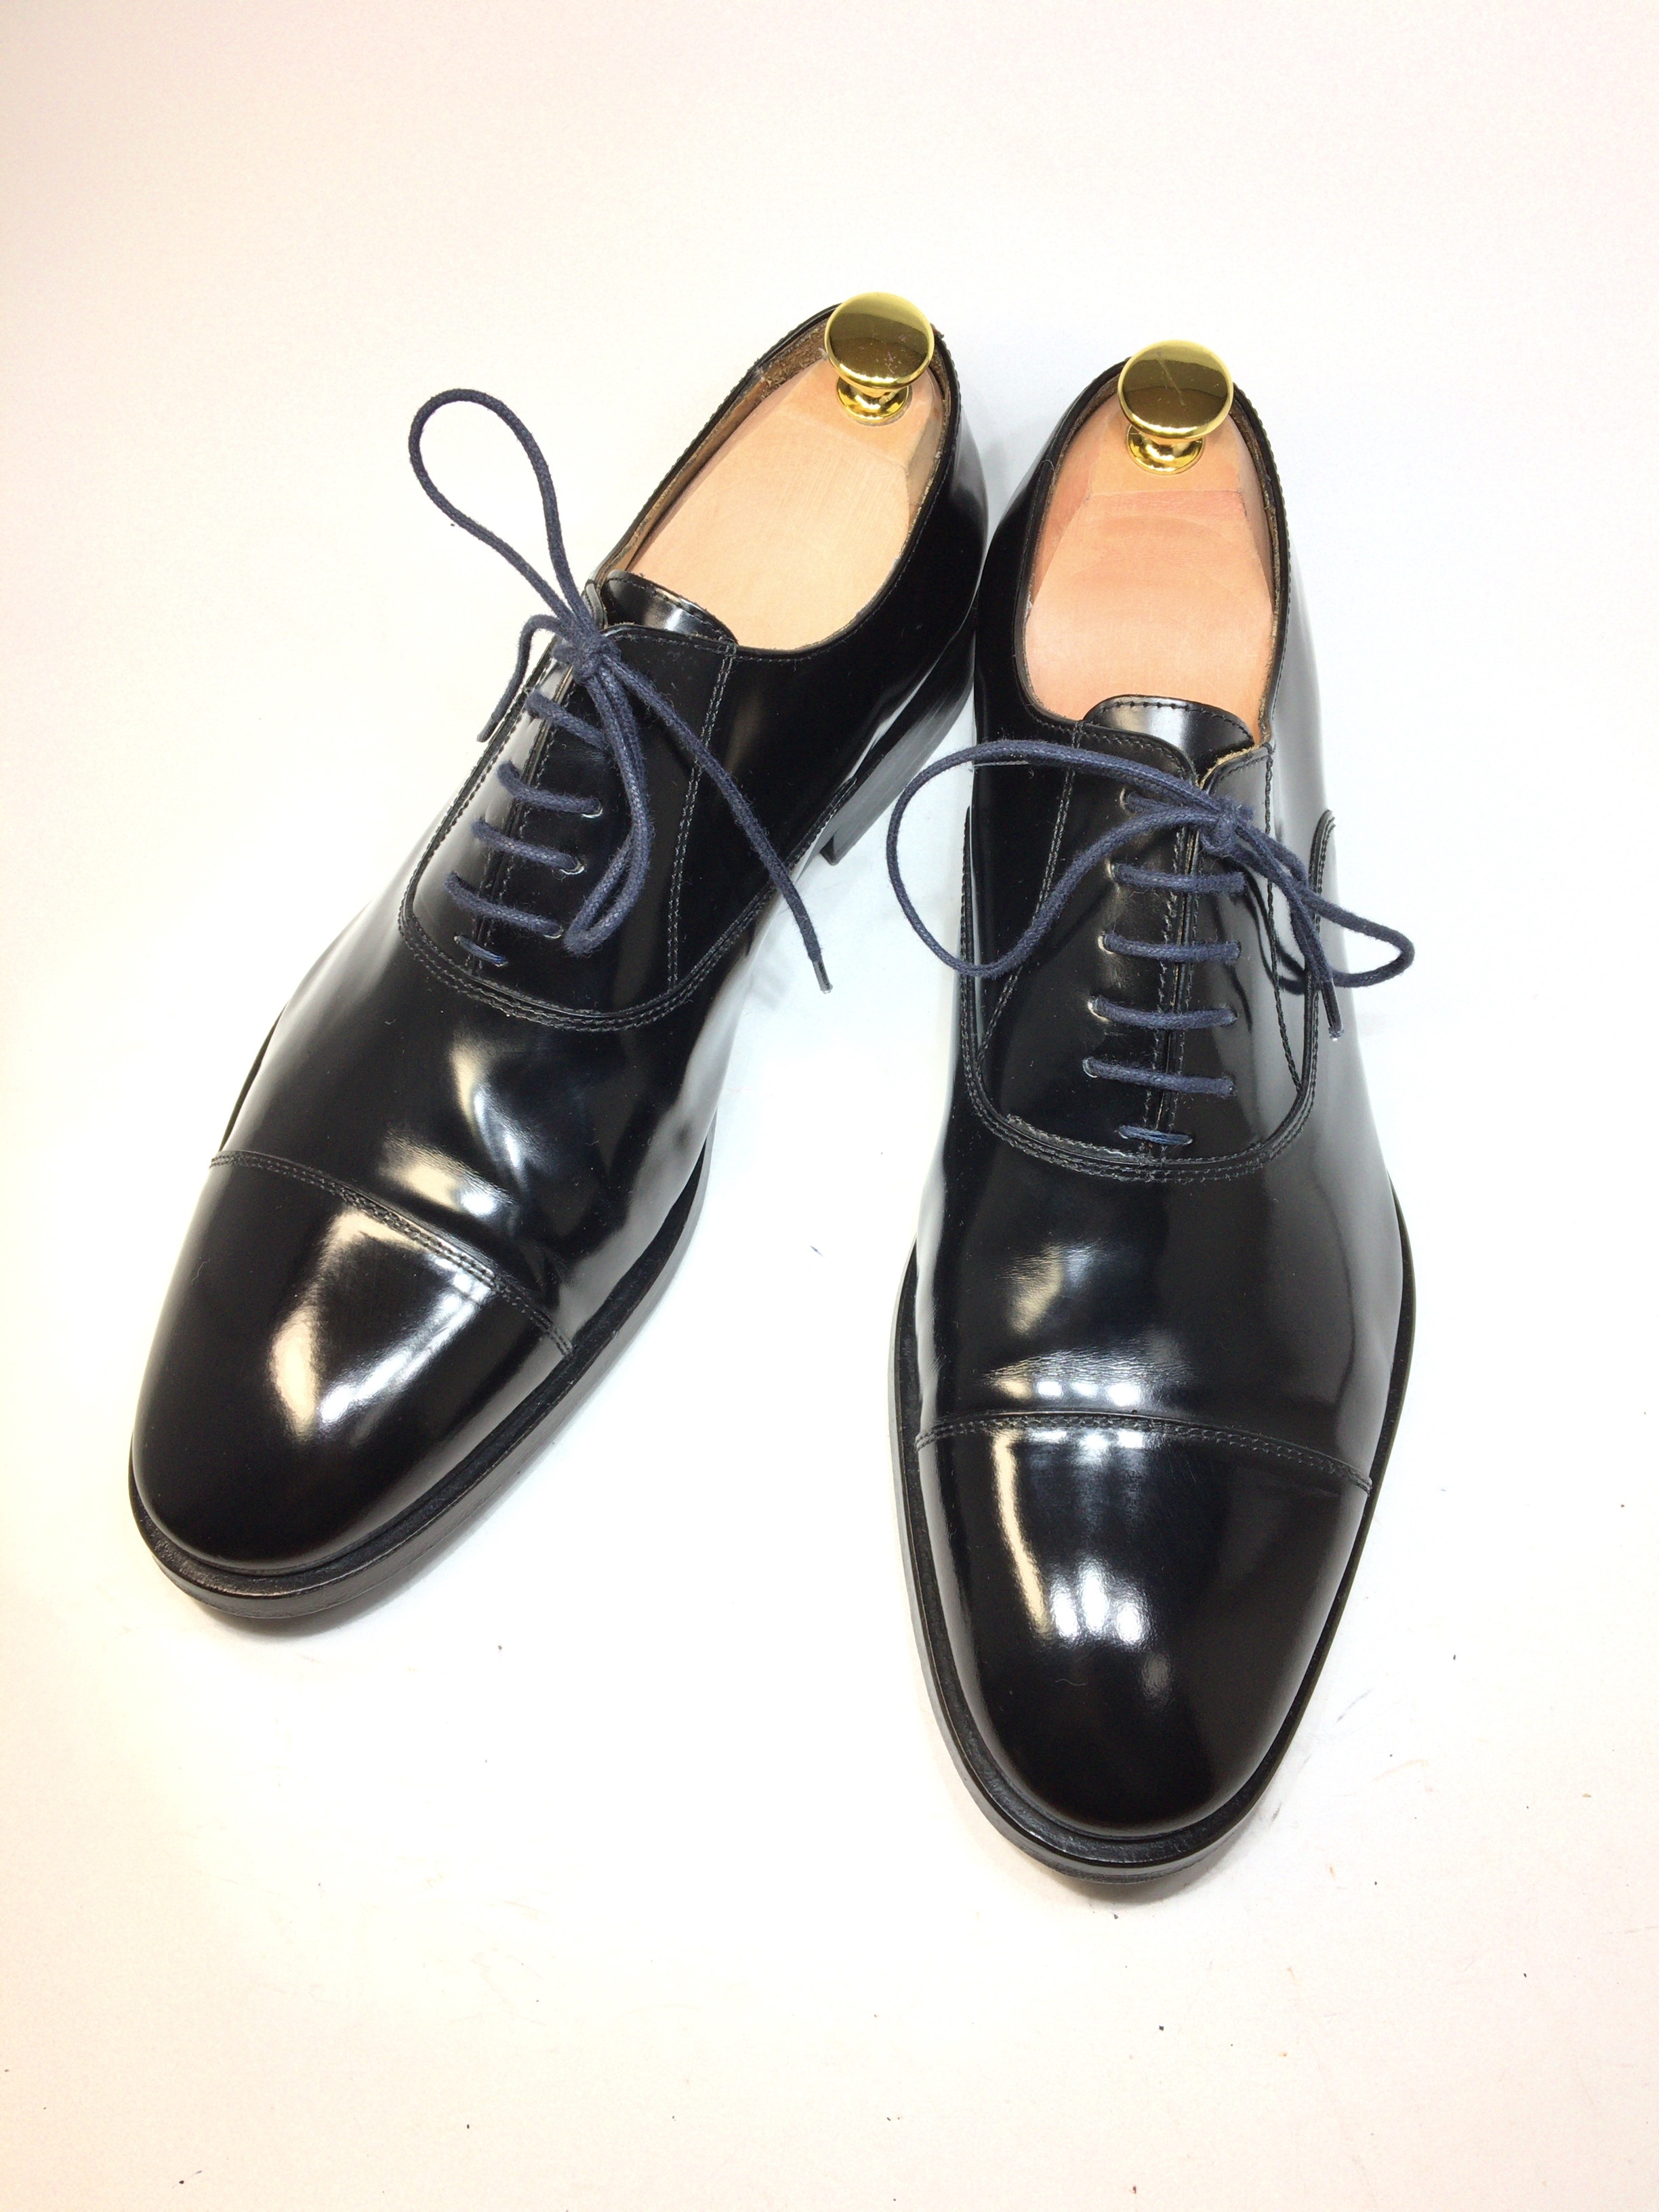 ポールスミス Paulsmith ストレートチップ 26 5センチ 中古靴 革靴 ブーツ通販専門店 Dafsmart ダフスマート Online Shop